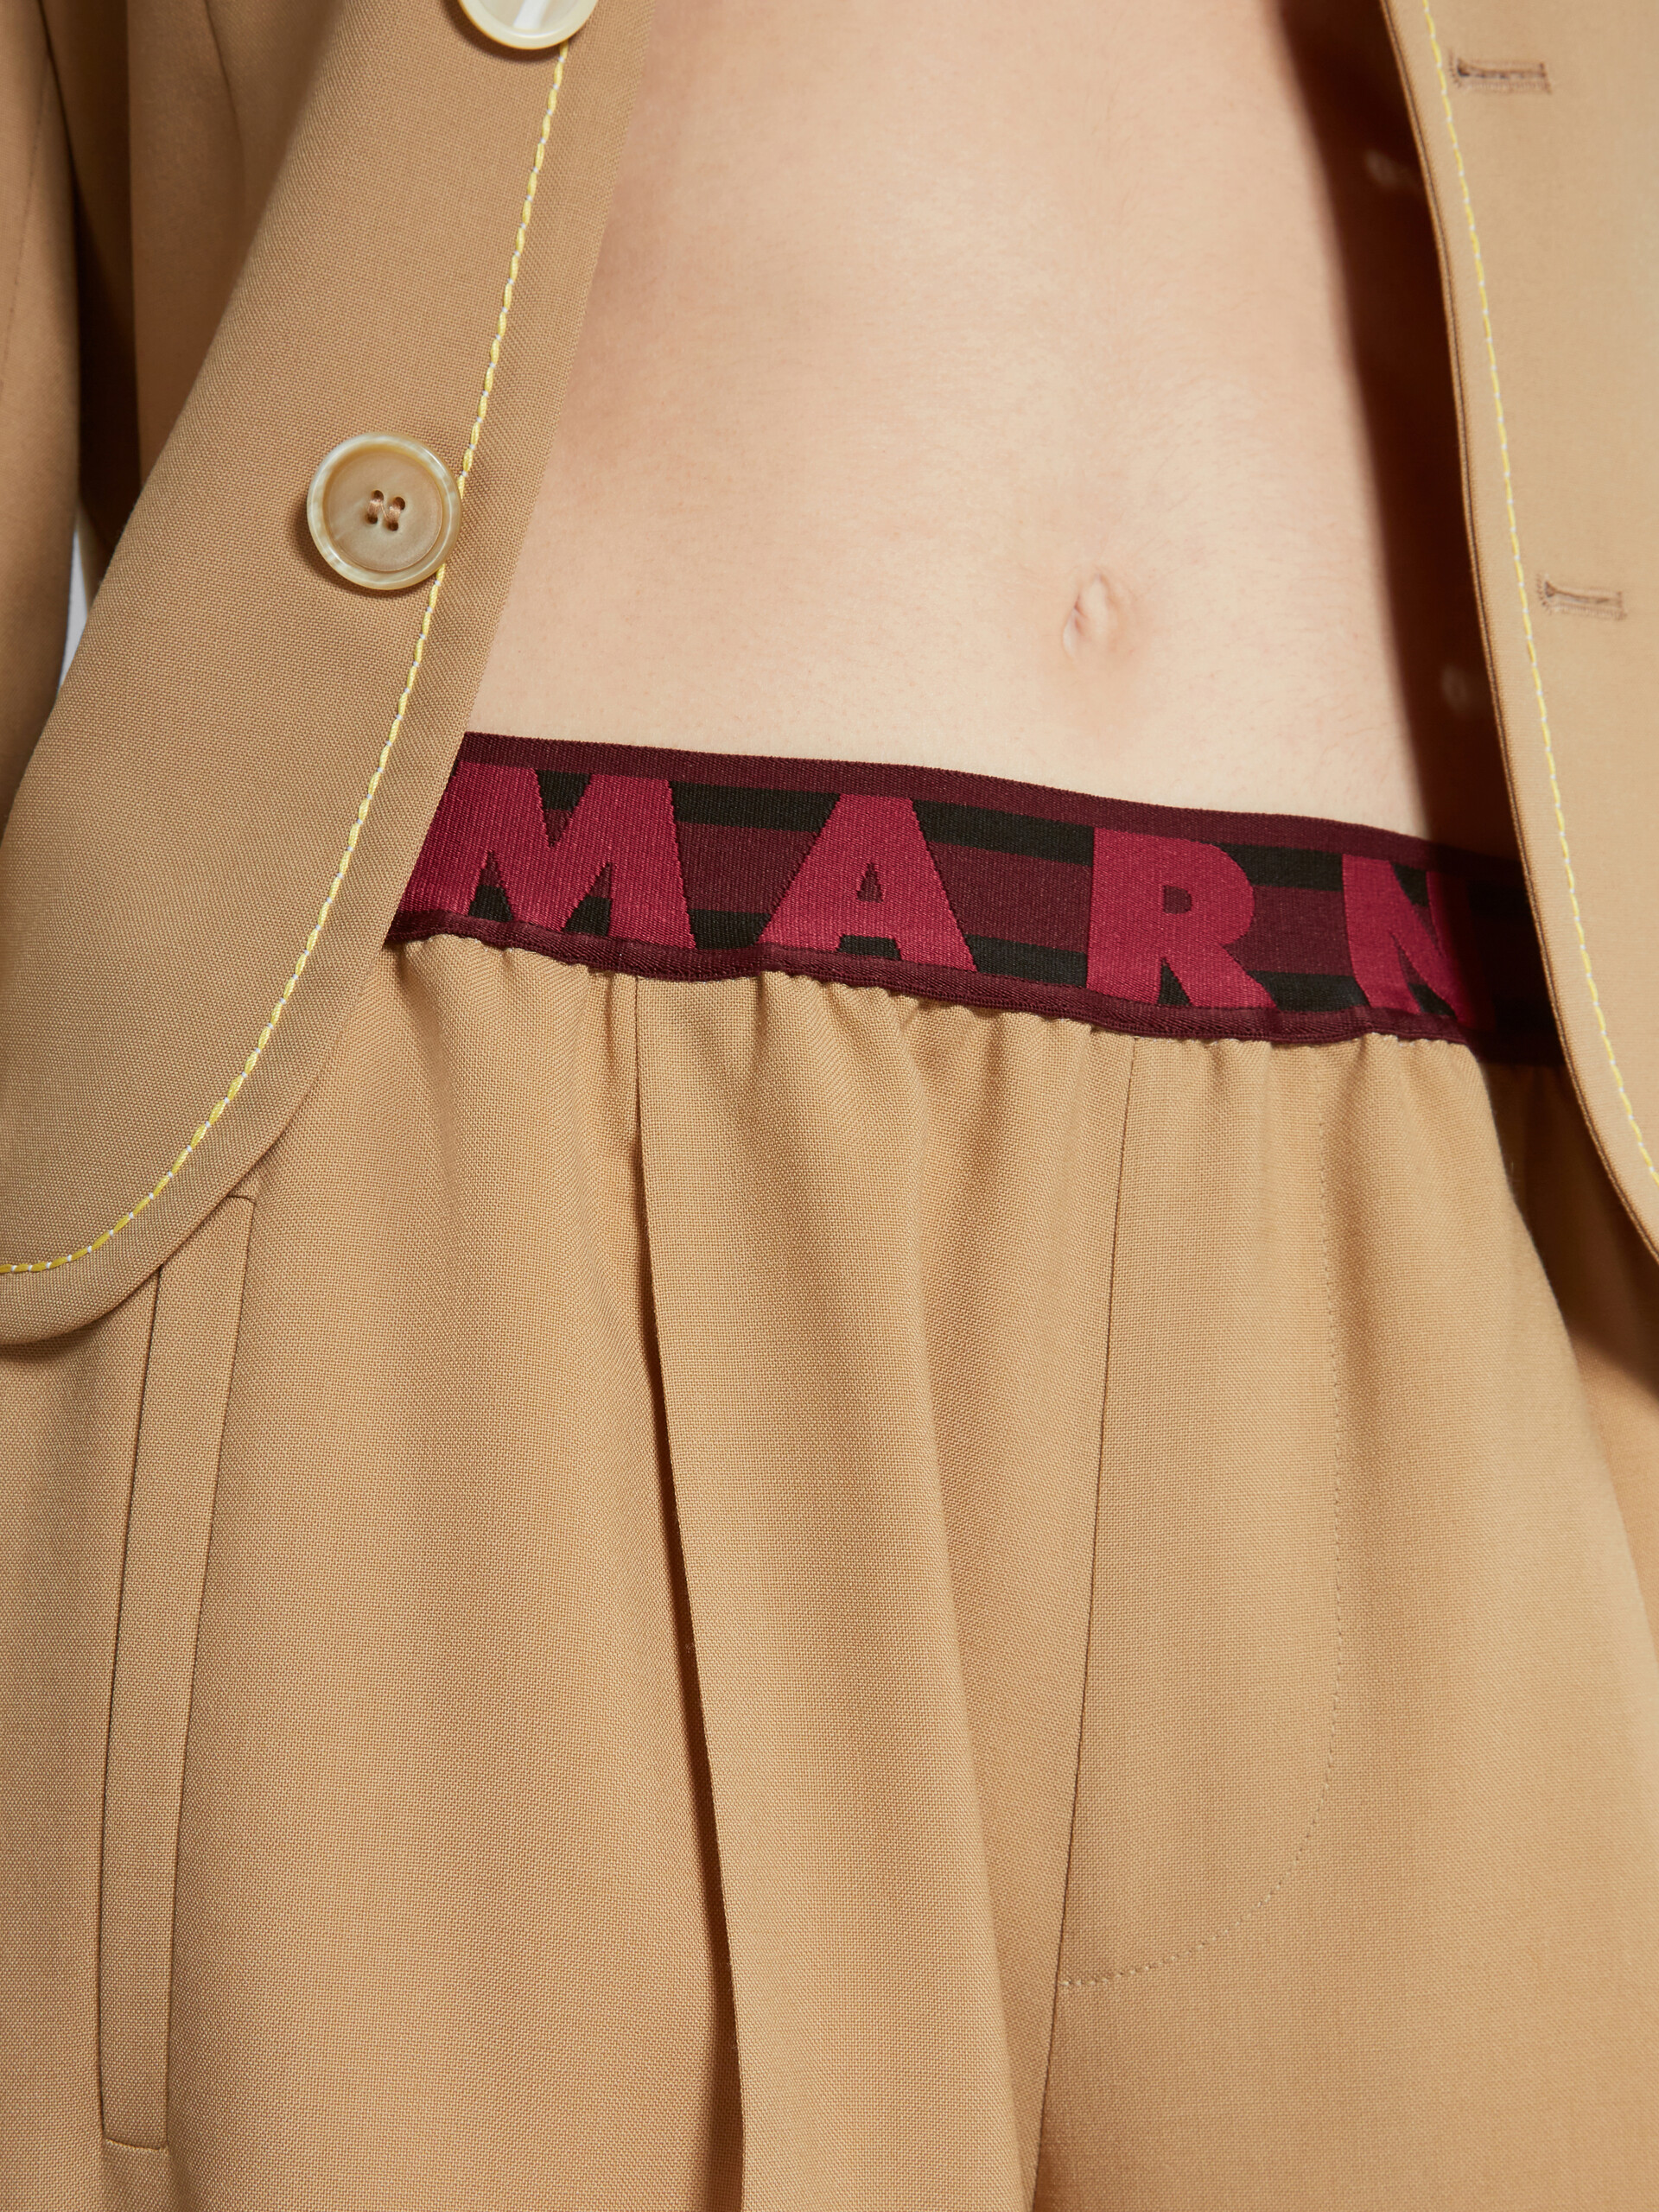 Pantalones acampanados beige de lana con logotipo en la cintura - Pantalones - Image 4